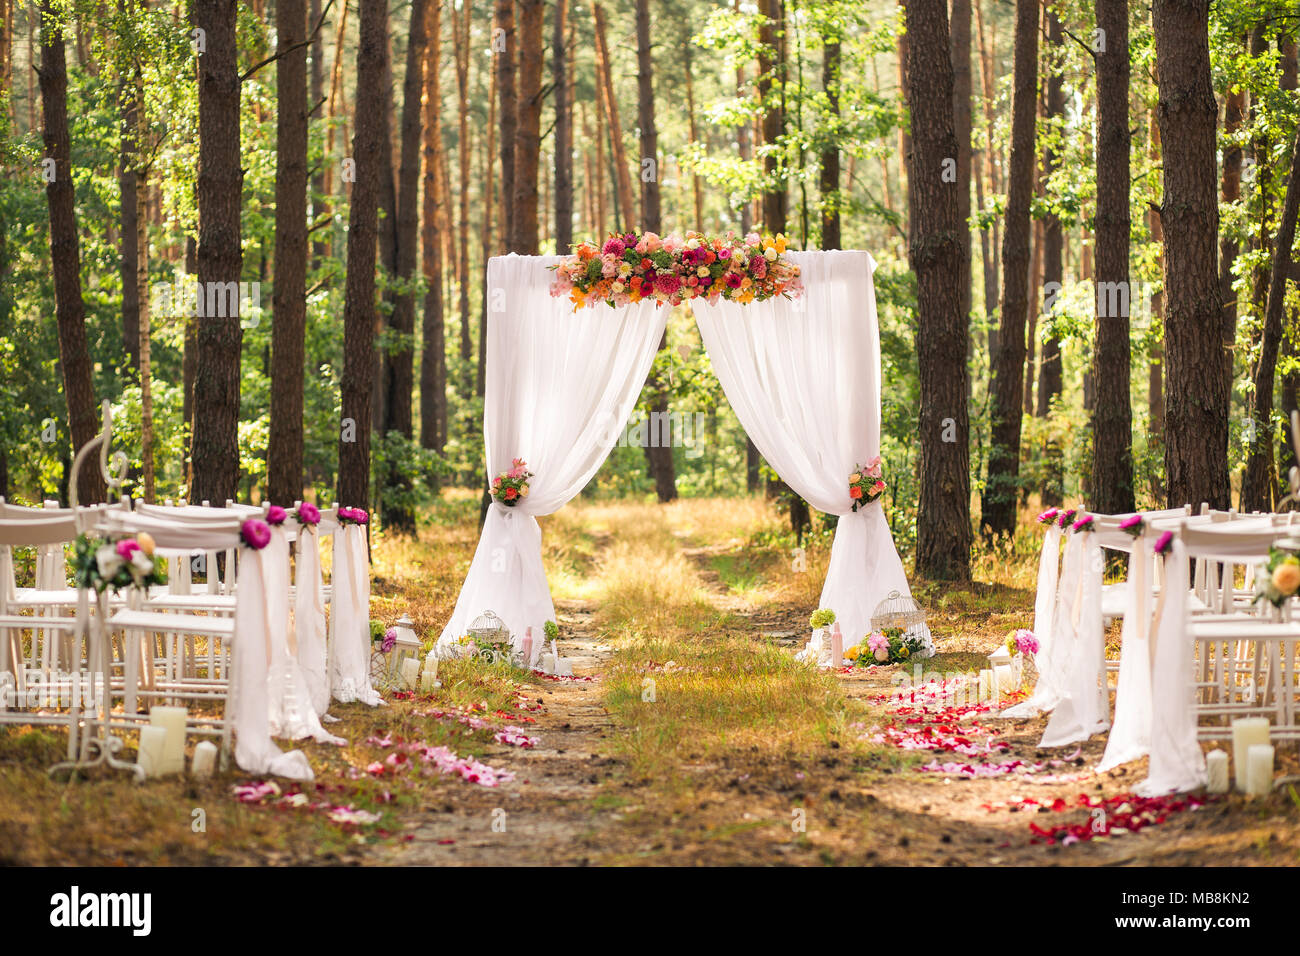 Schöne elegante Hochzeit Dekorationen für Zeremonie außerhalb im alten Wald mit riesigen Pinien. Horizontale Farbe Bild. Stockfoto